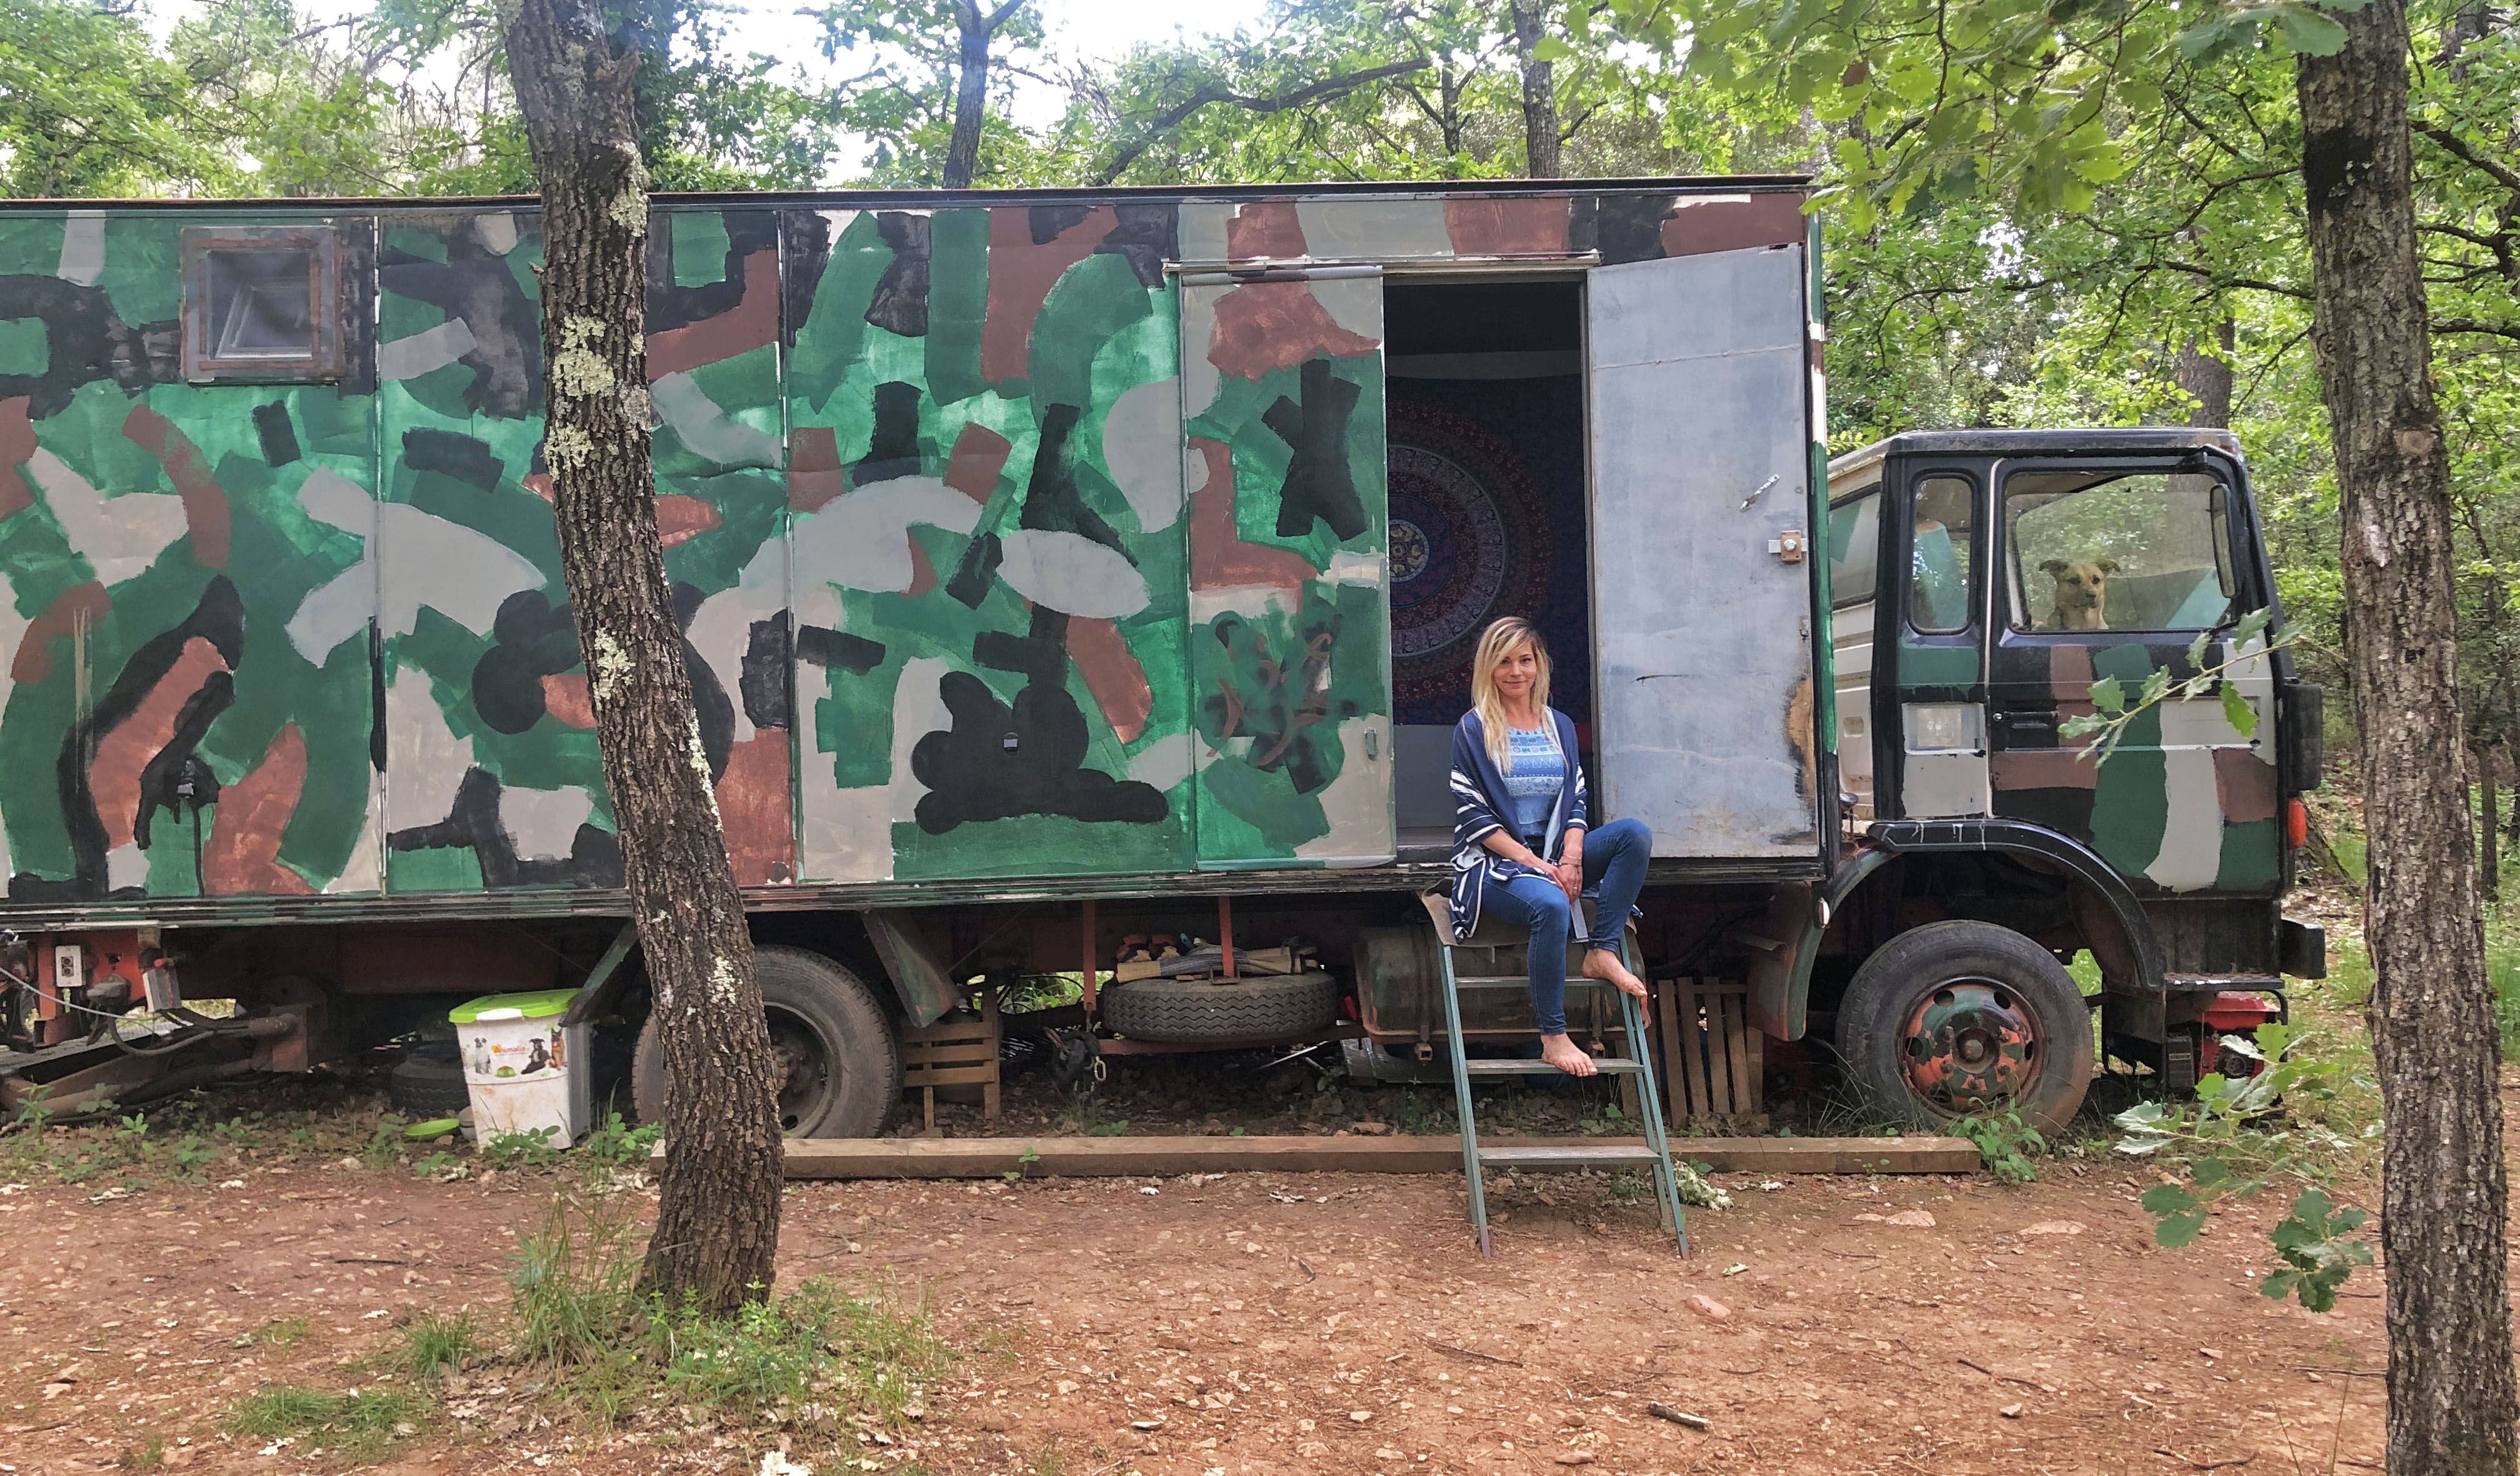 Alicia vivre en forêt autosuffisance vanlife autonomie permaculture